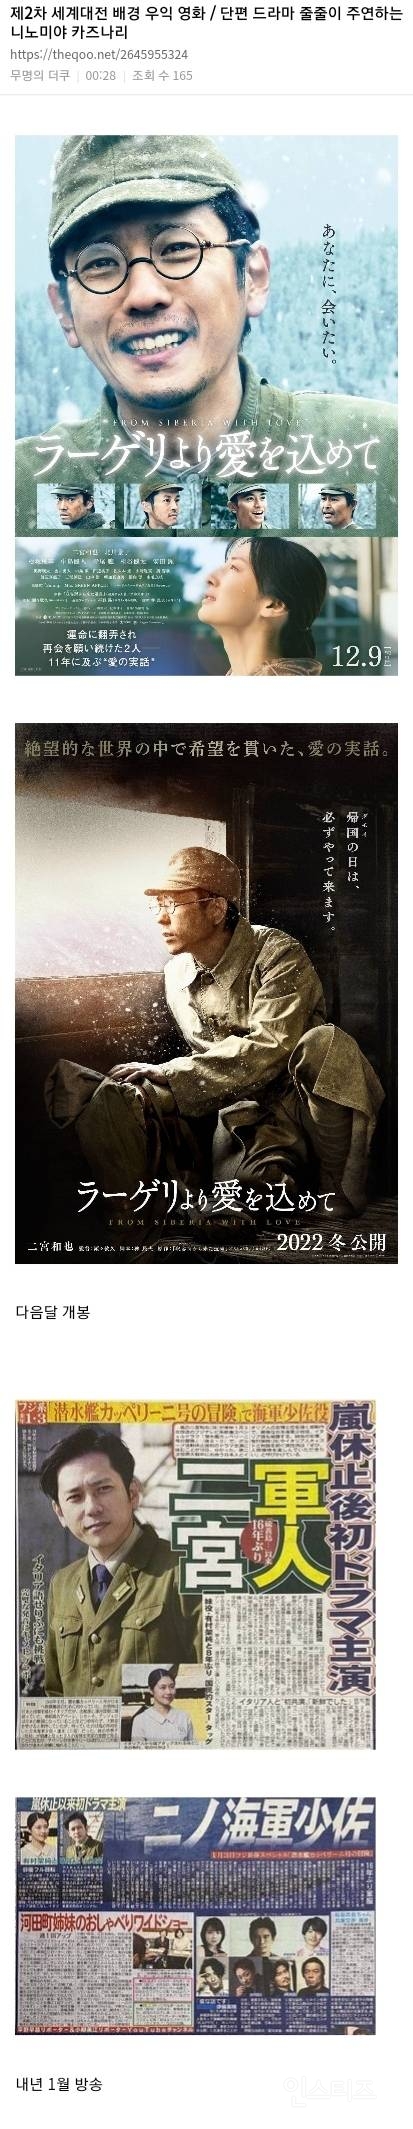 조부가 일제강점기 때 조선주둔군이었던 일본 탑아이돌(현재 우익영화 계속 찍음) | 인스티즈